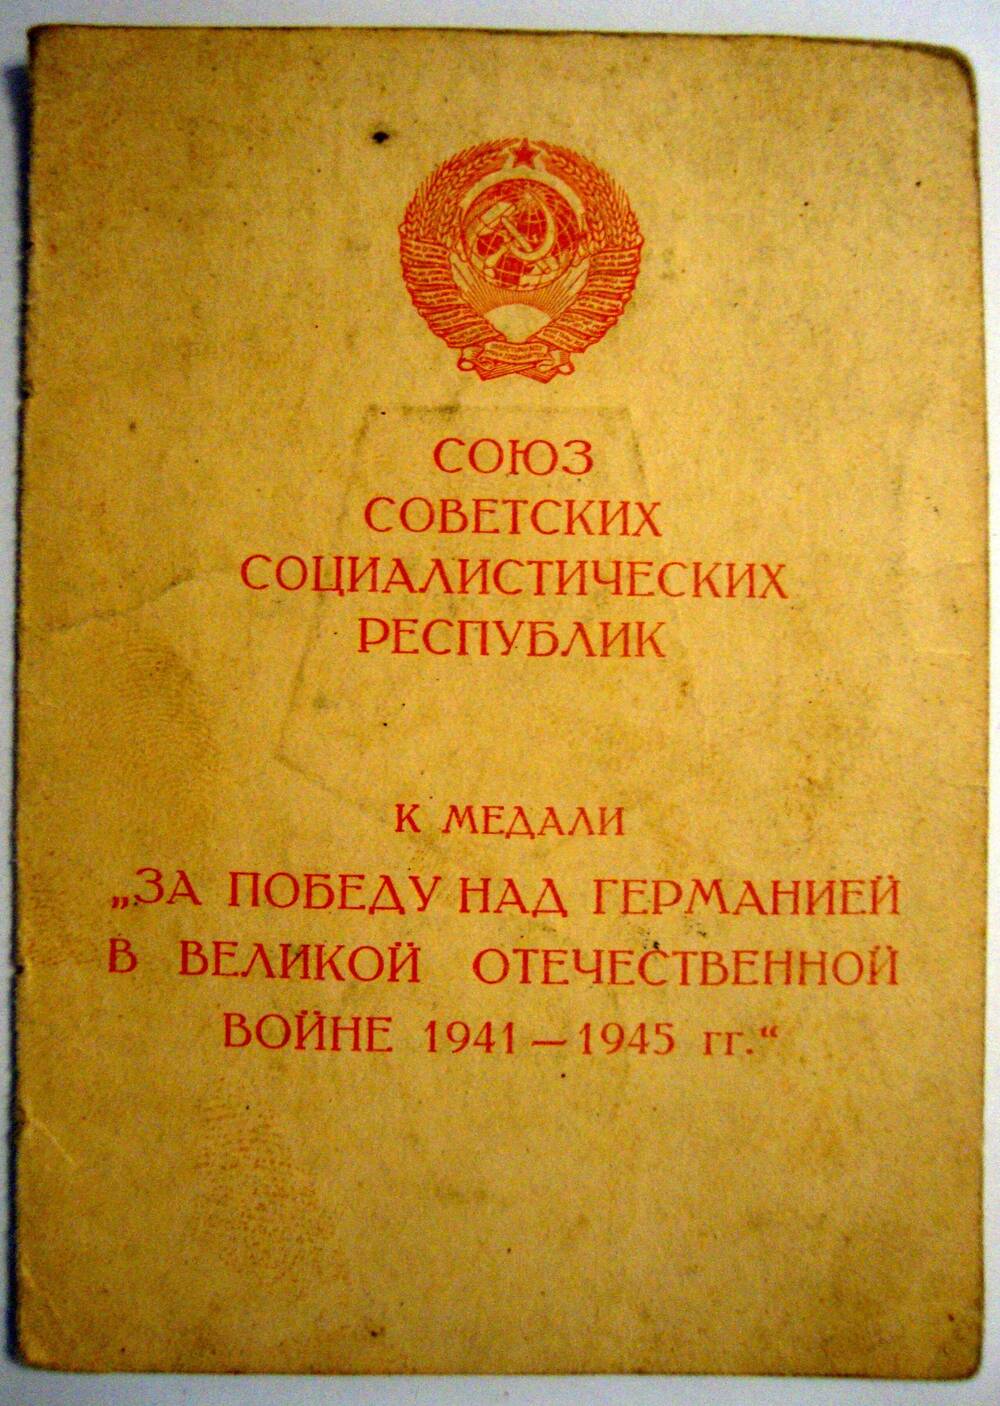 Удостоверение к медали За Победу над Германией в Великой Отечественной войне 1941-1945 гг. Степанова В. Г.